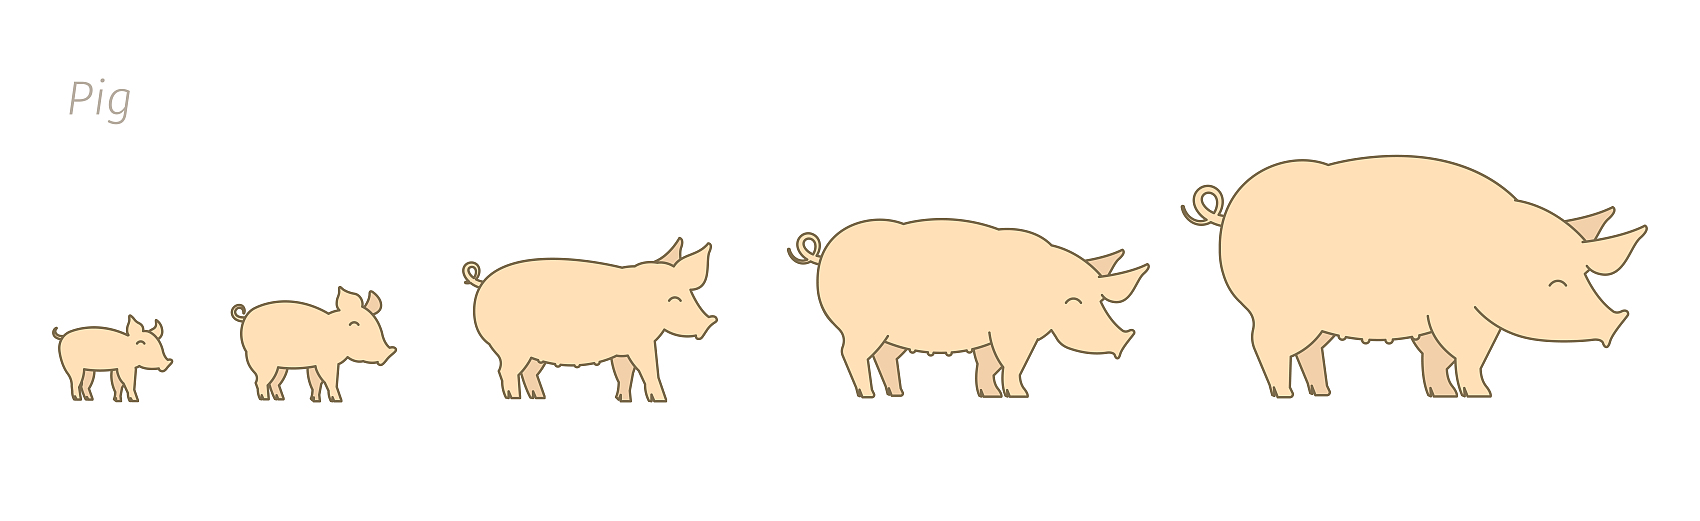 Świnie w różnych stadiach wzrostu